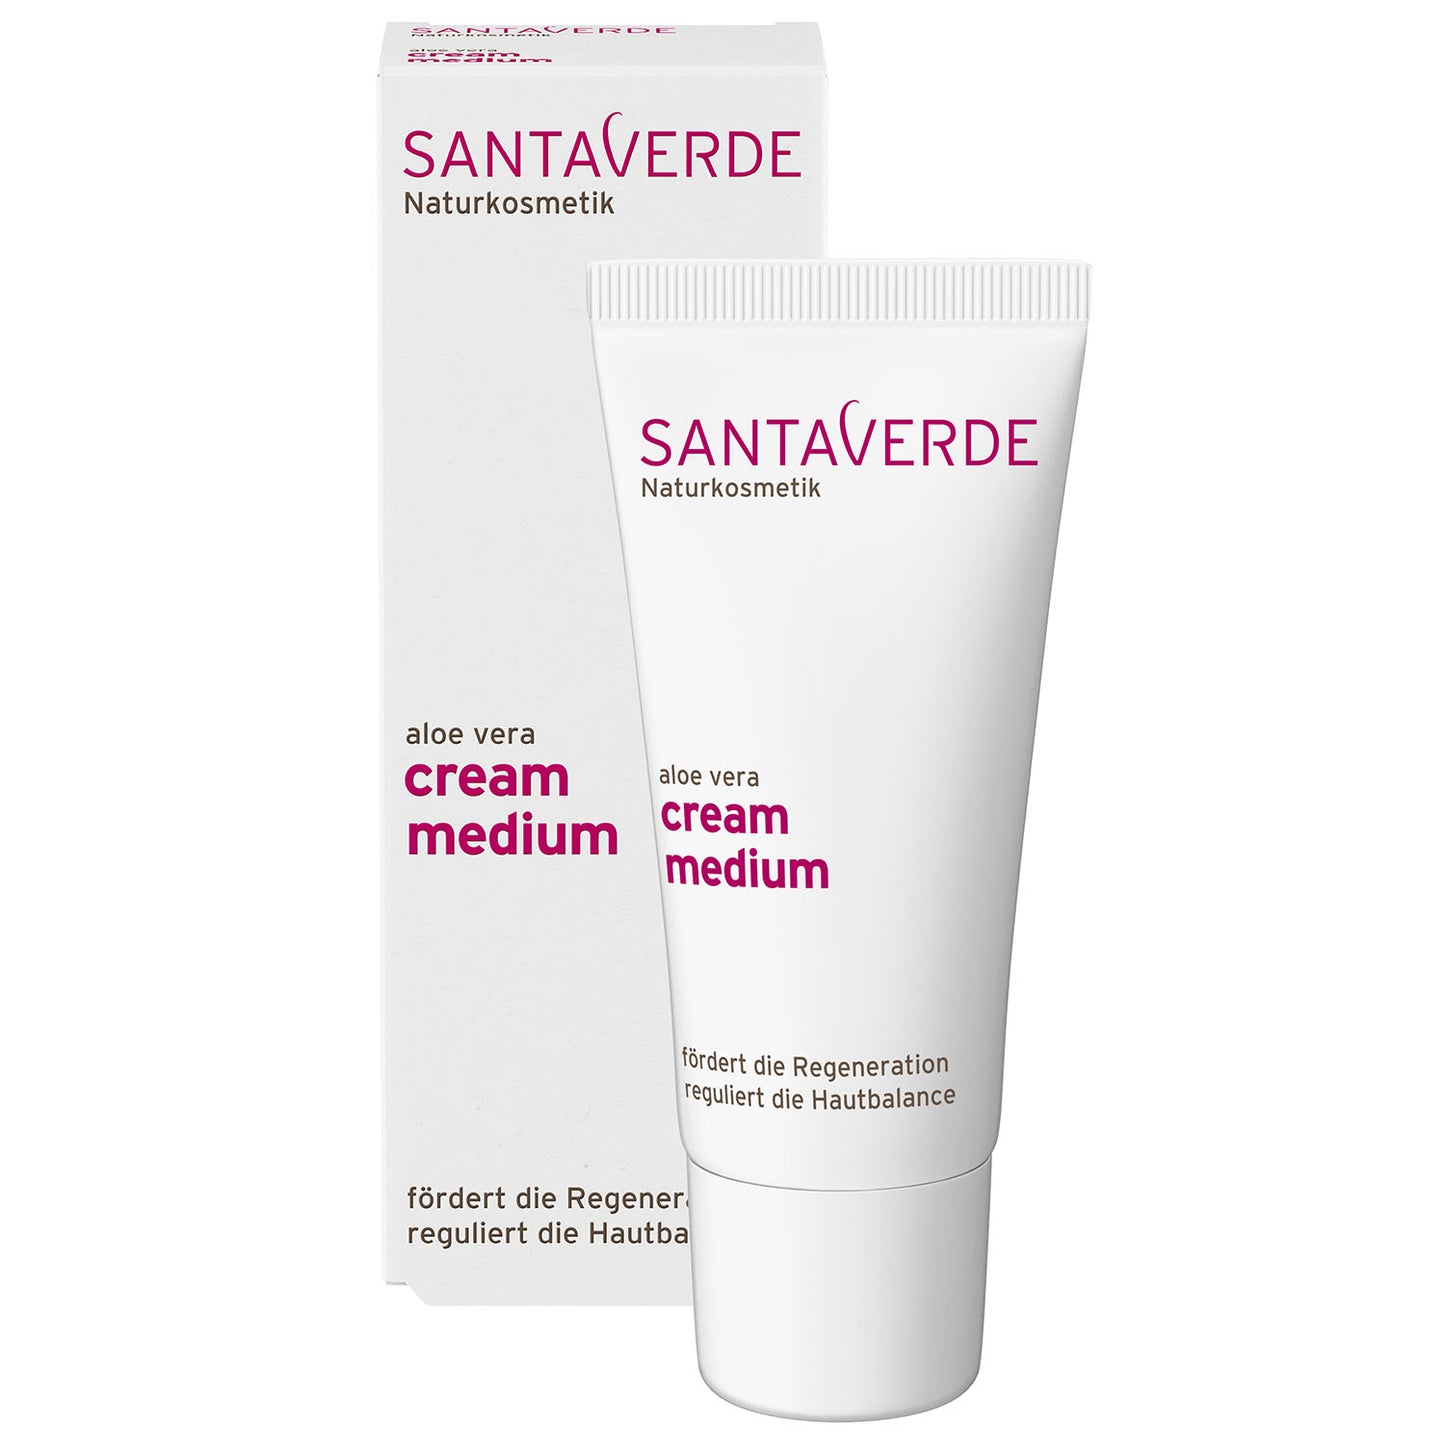 Santaverde - Aloe Vera Creme Medium ohne Duft - Basis Gesichtspflege - 30 ml